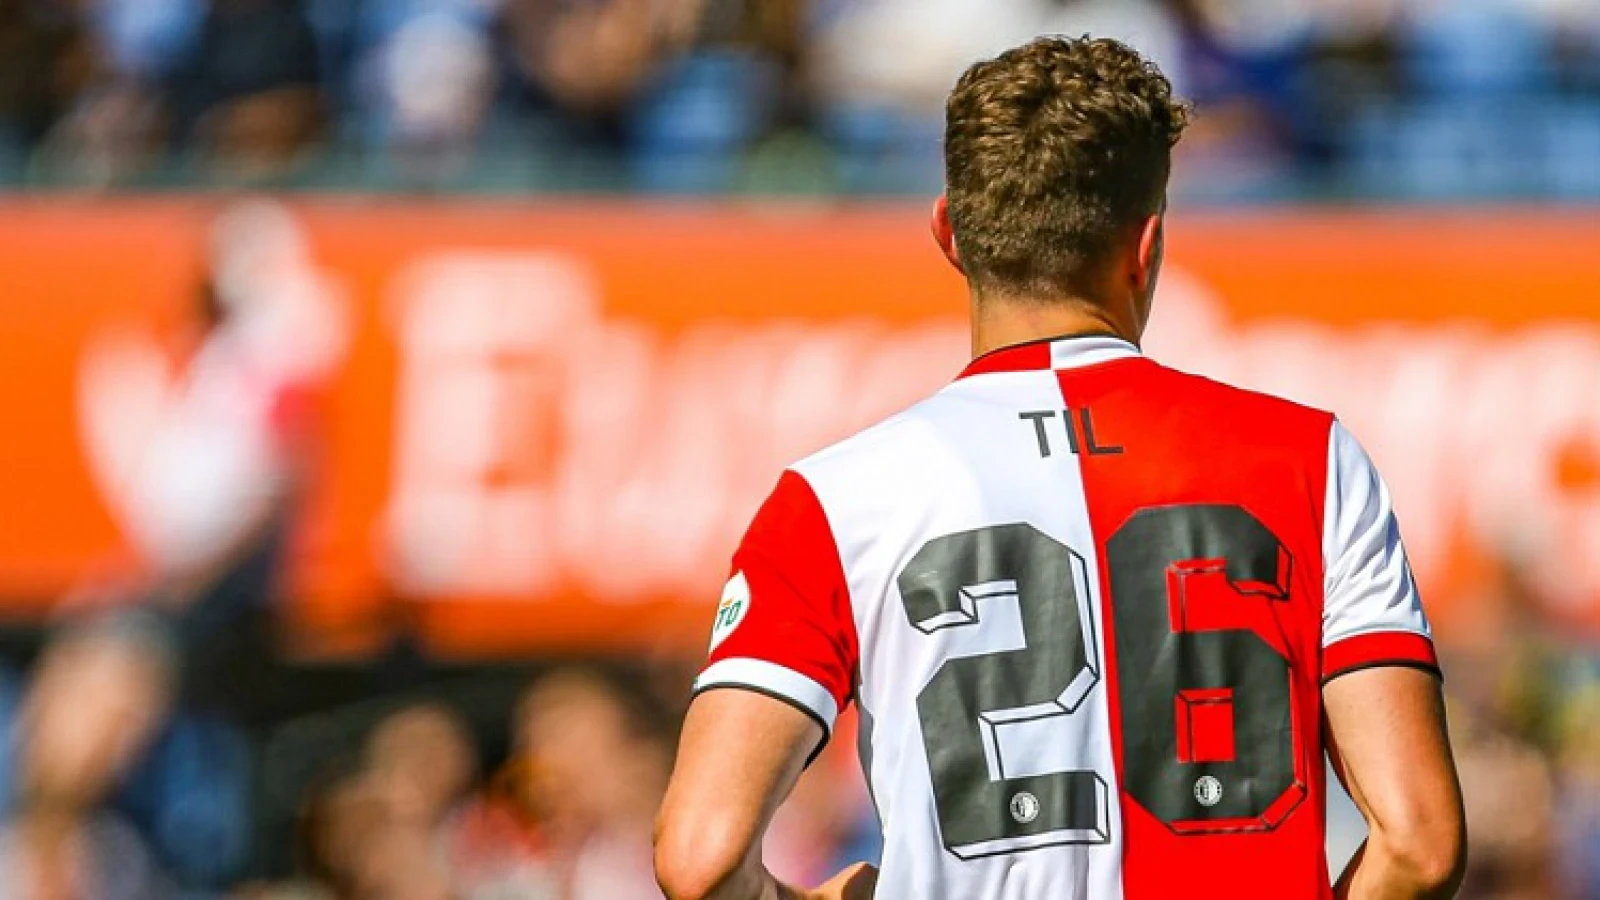 Til blij met Feyenoord: 'Ik zou mezelf niet willen definiëren als een ras-Amsterdammer'